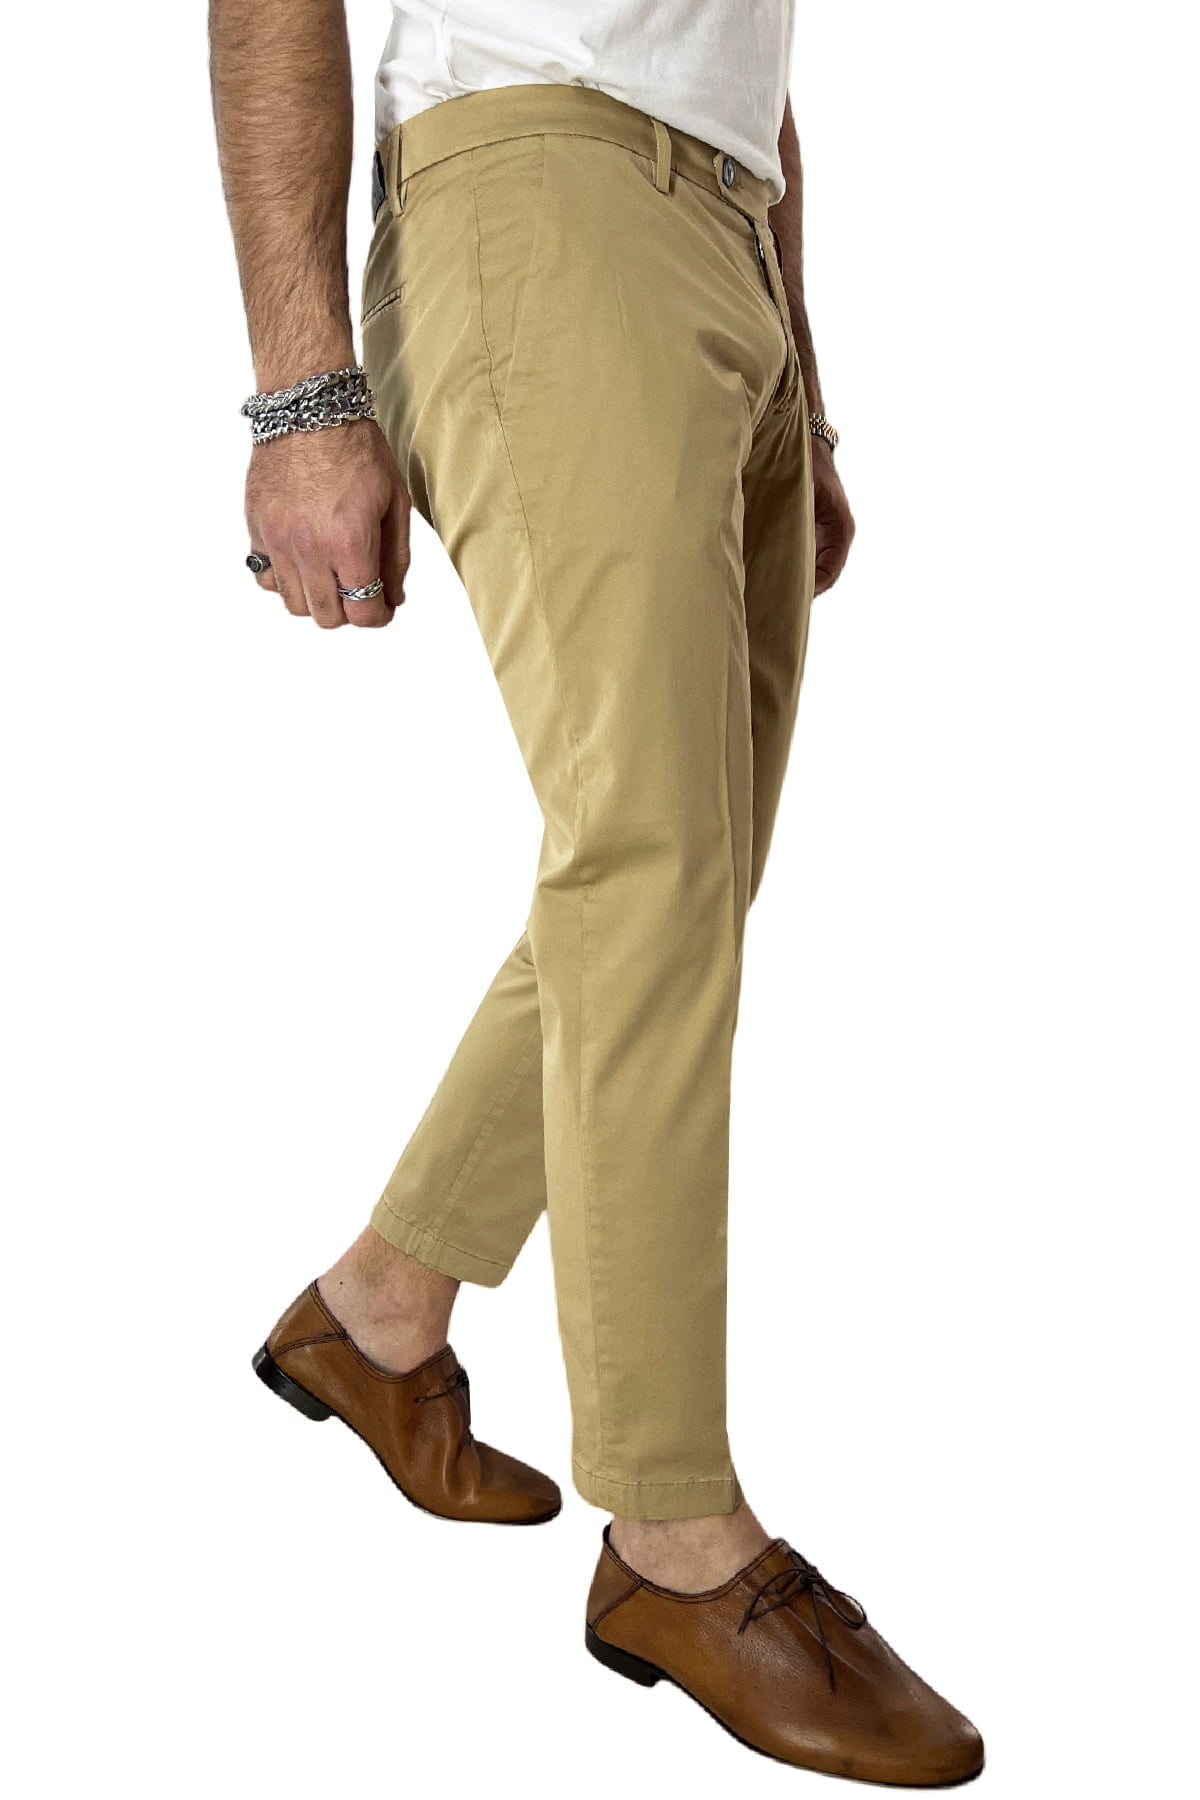 Pantaloni uomo estivi leggeri a righe tasche america slim fit 44 46 48 50 52 